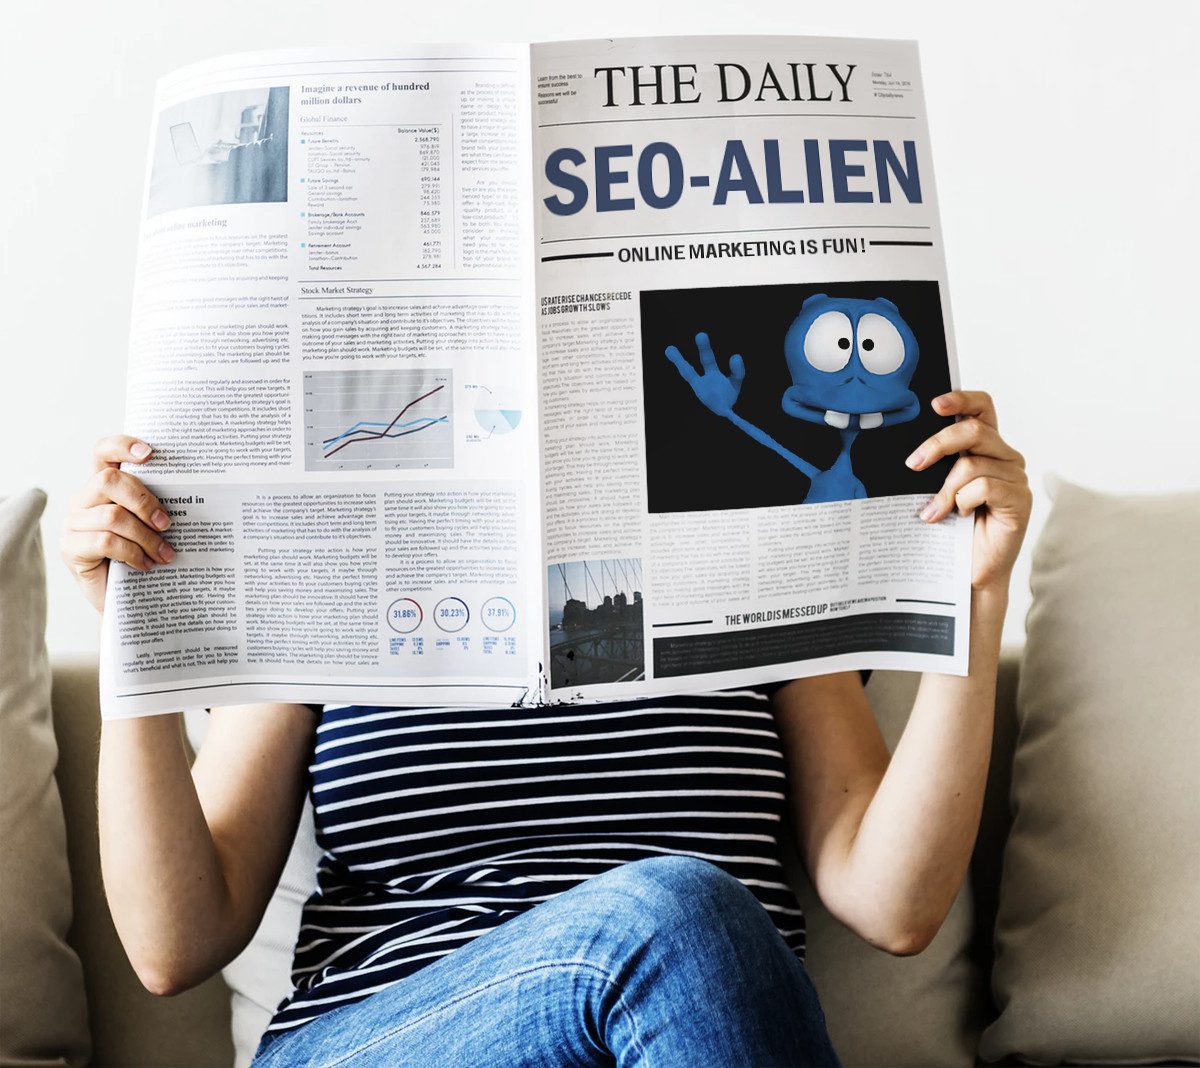 SEO-Alien in Newspaper - Internet Marketing is fun!